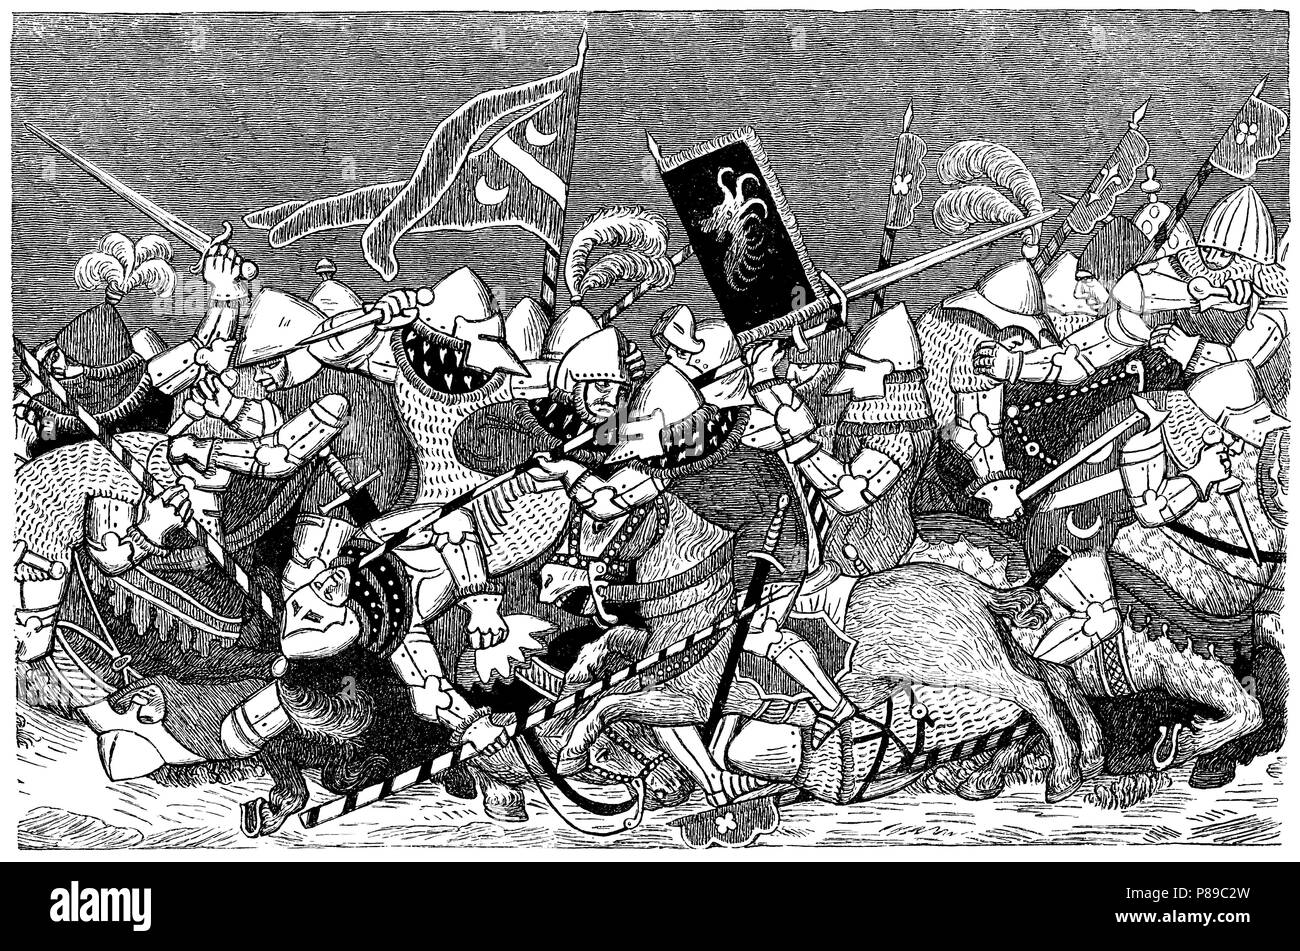 Historia. Batalla de Slag Bij Sempach en 1386 entre las tropas austríacas al mando del duque Leopoldo III de Habsburgo y la Antigua Confederación Suiza en 1386 con victoria de éstos últimos. Grabado de 1906. Stock Photo